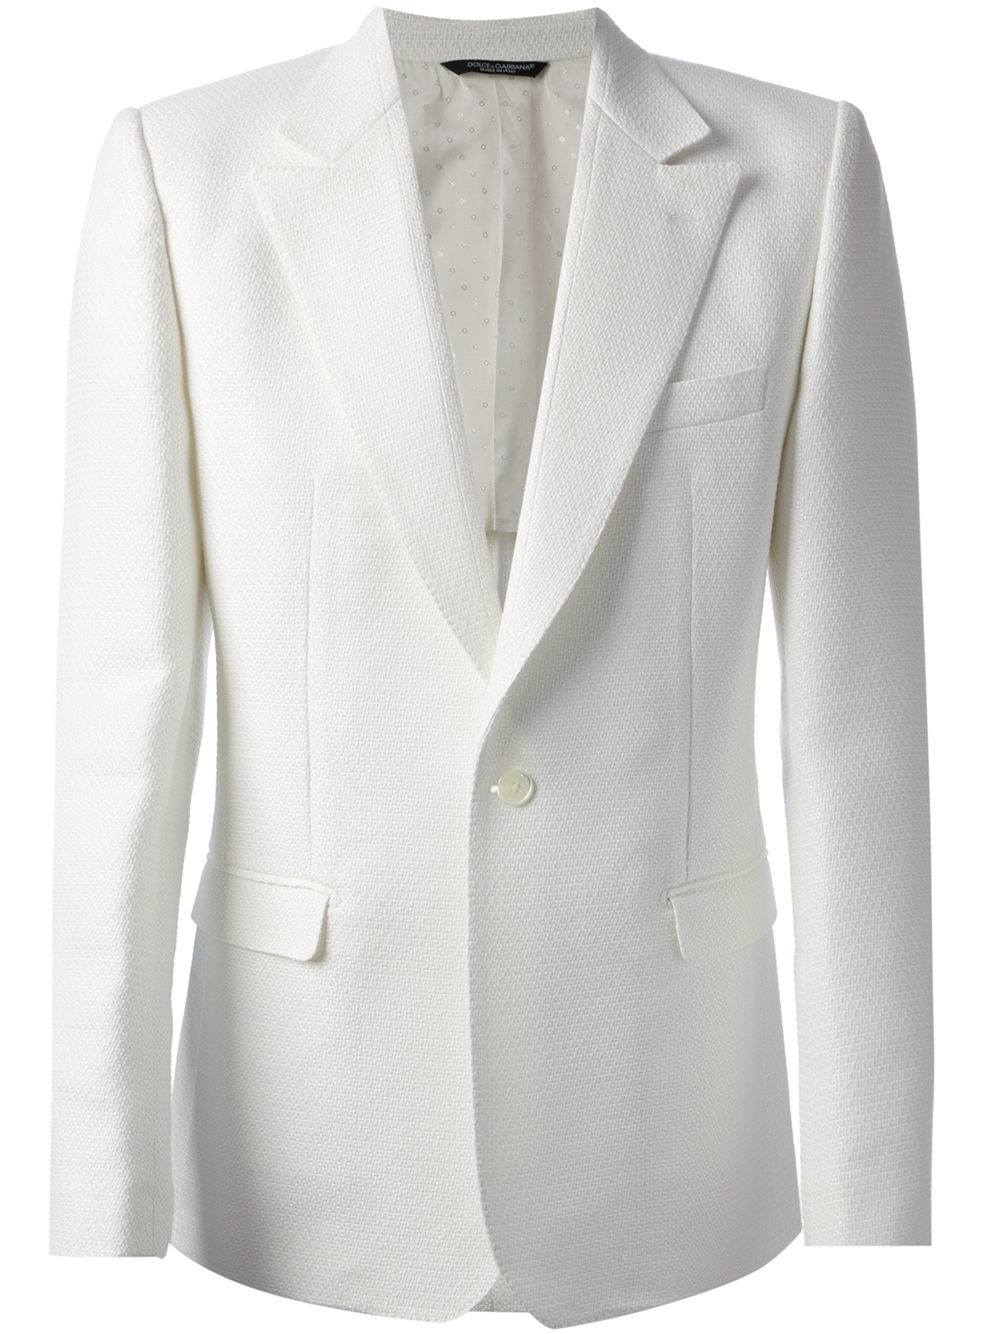 Lyst - Dolce & Gabbana One Button Blazer in White for Men